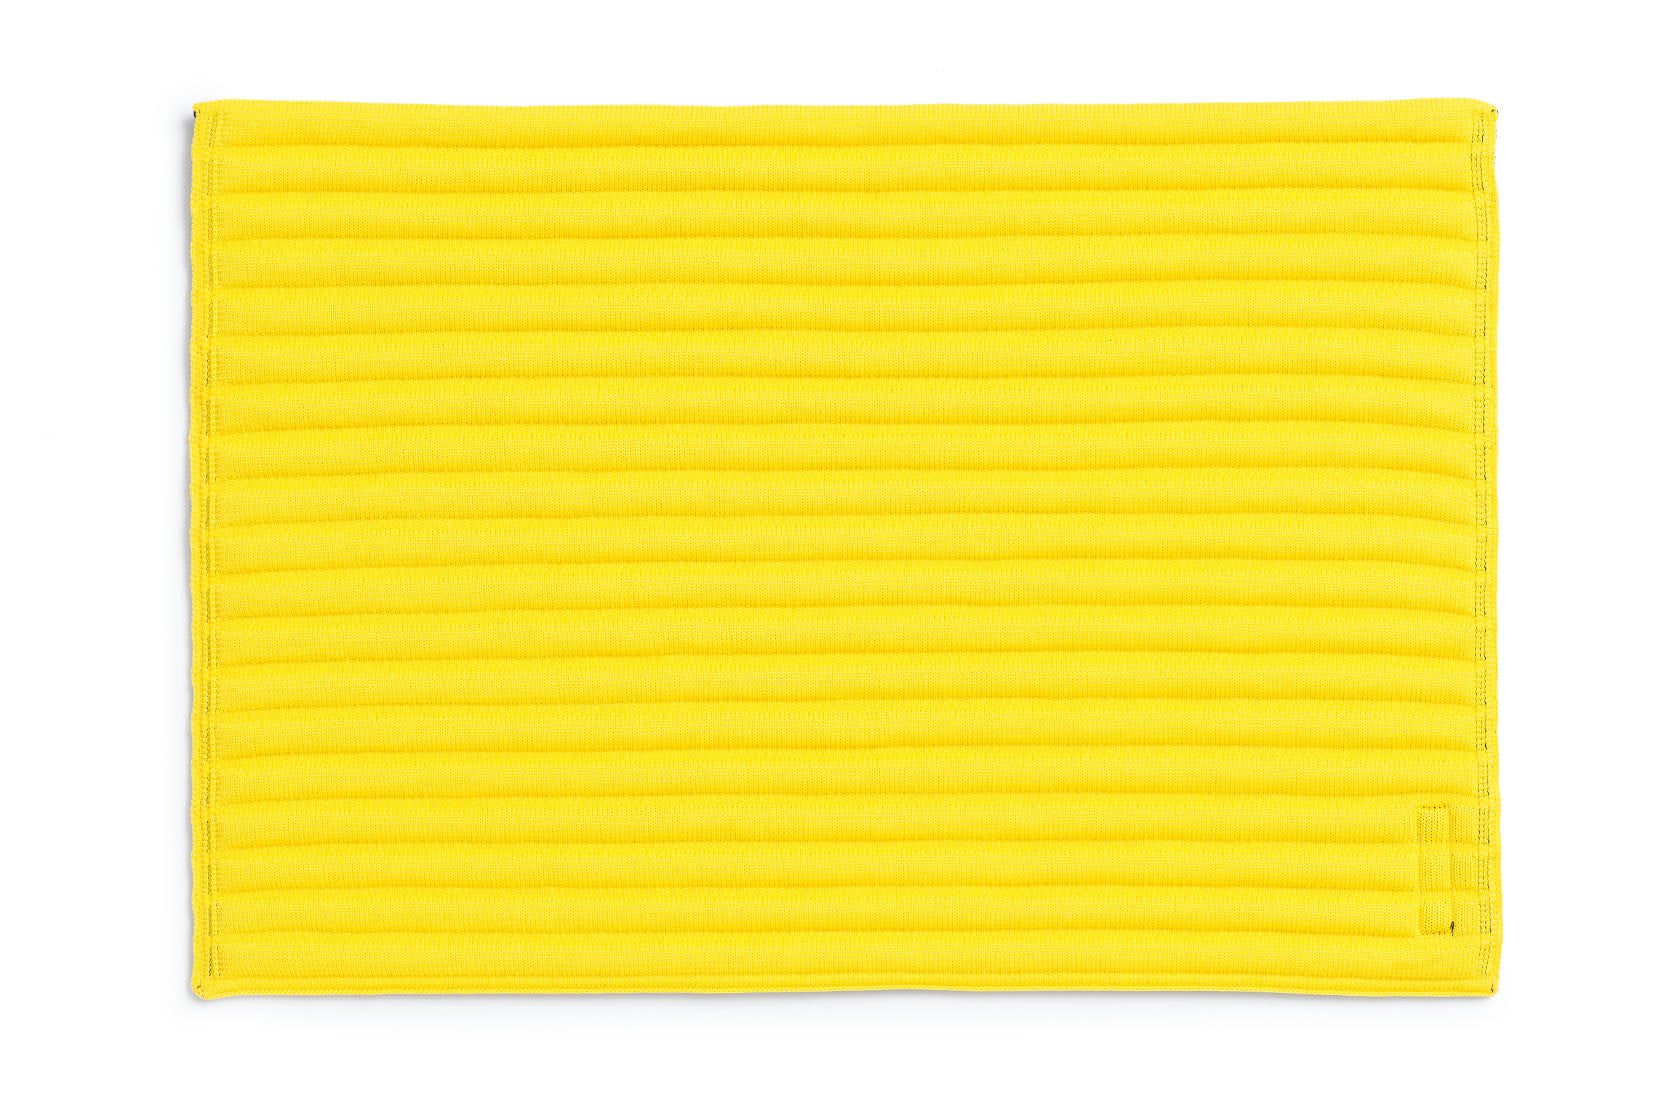 Pad de course INFI-KNIT réversible jaune et noir